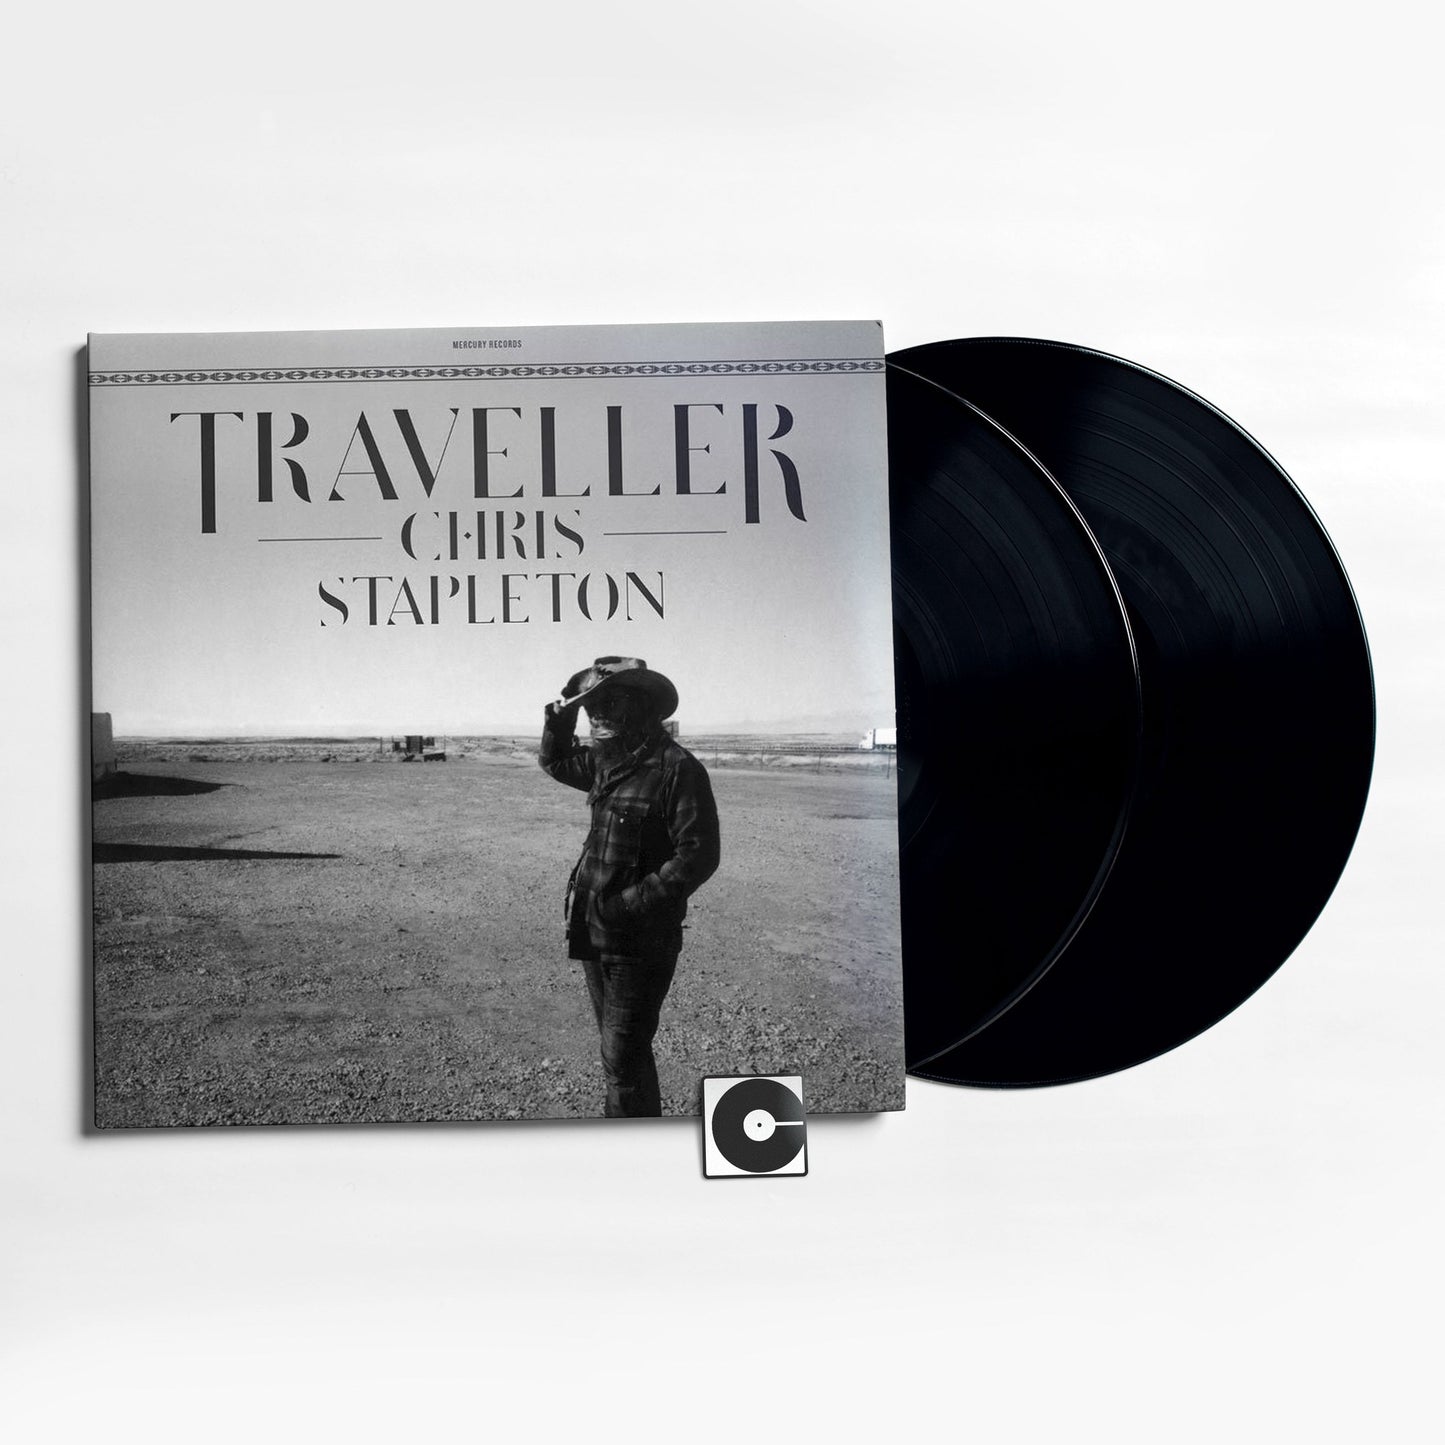 Chris Stapleton - "Traveller"